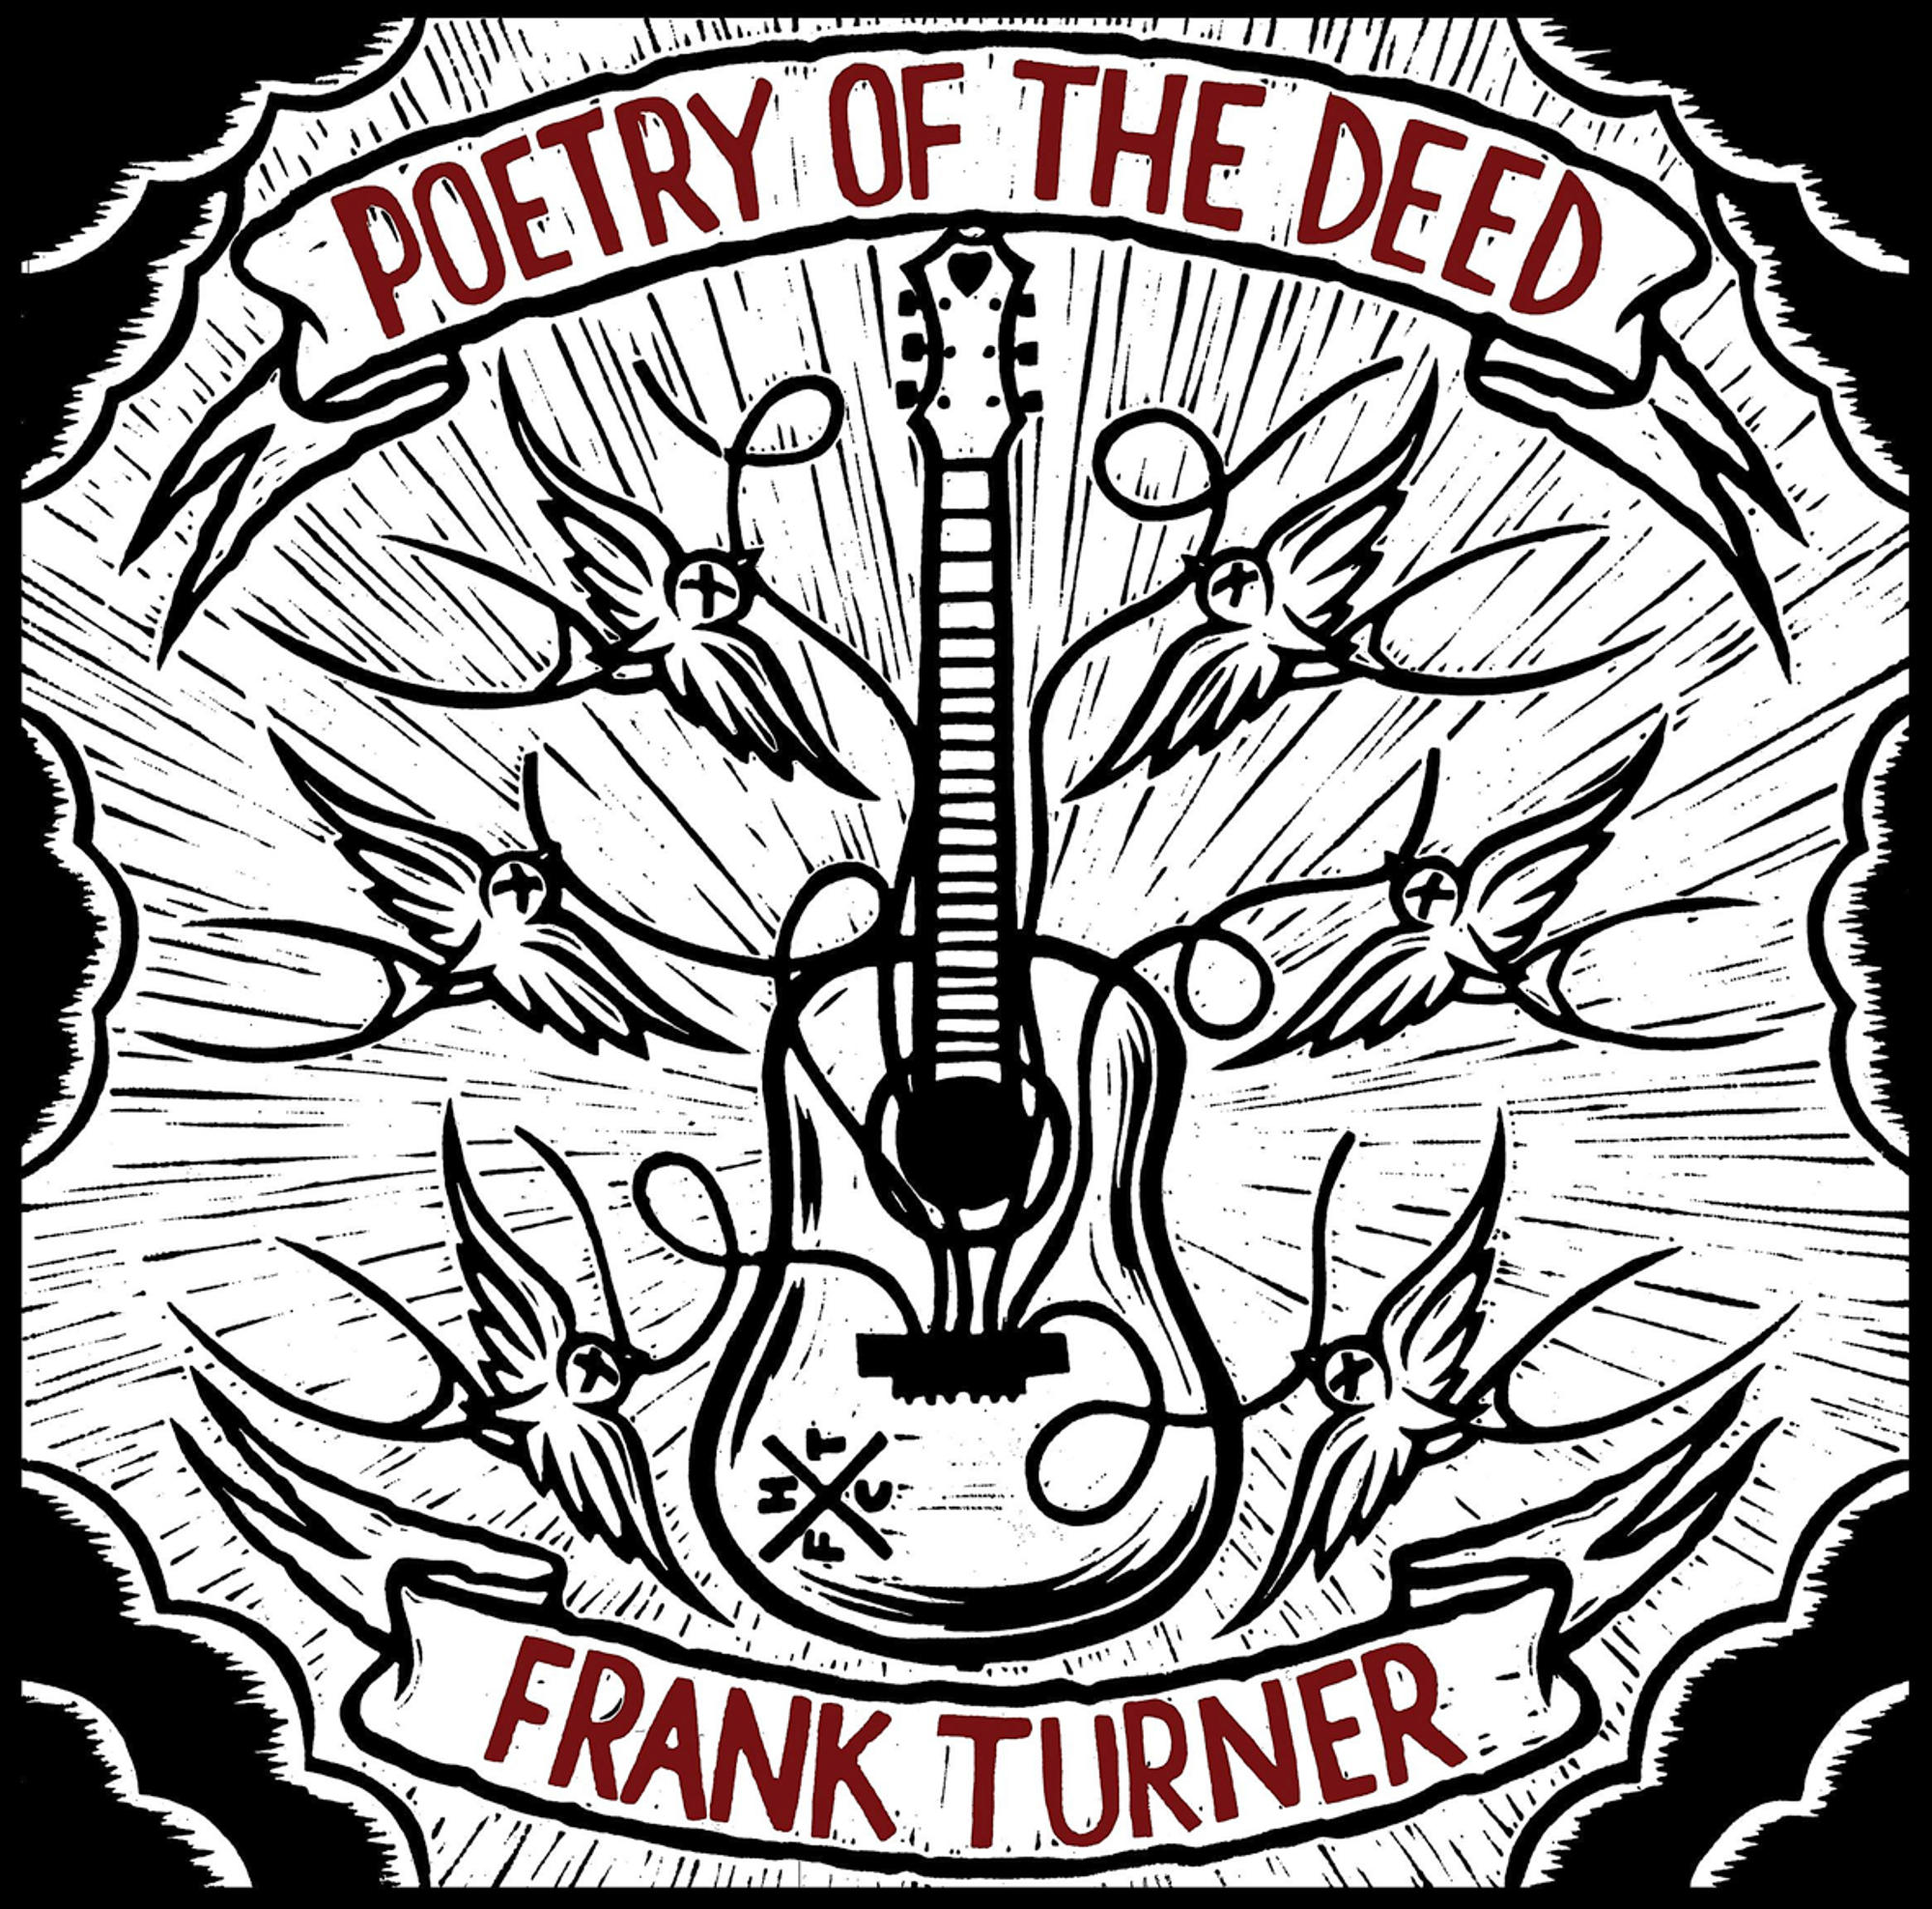 The Frank Deed Of - Poetry - (CD) Turner